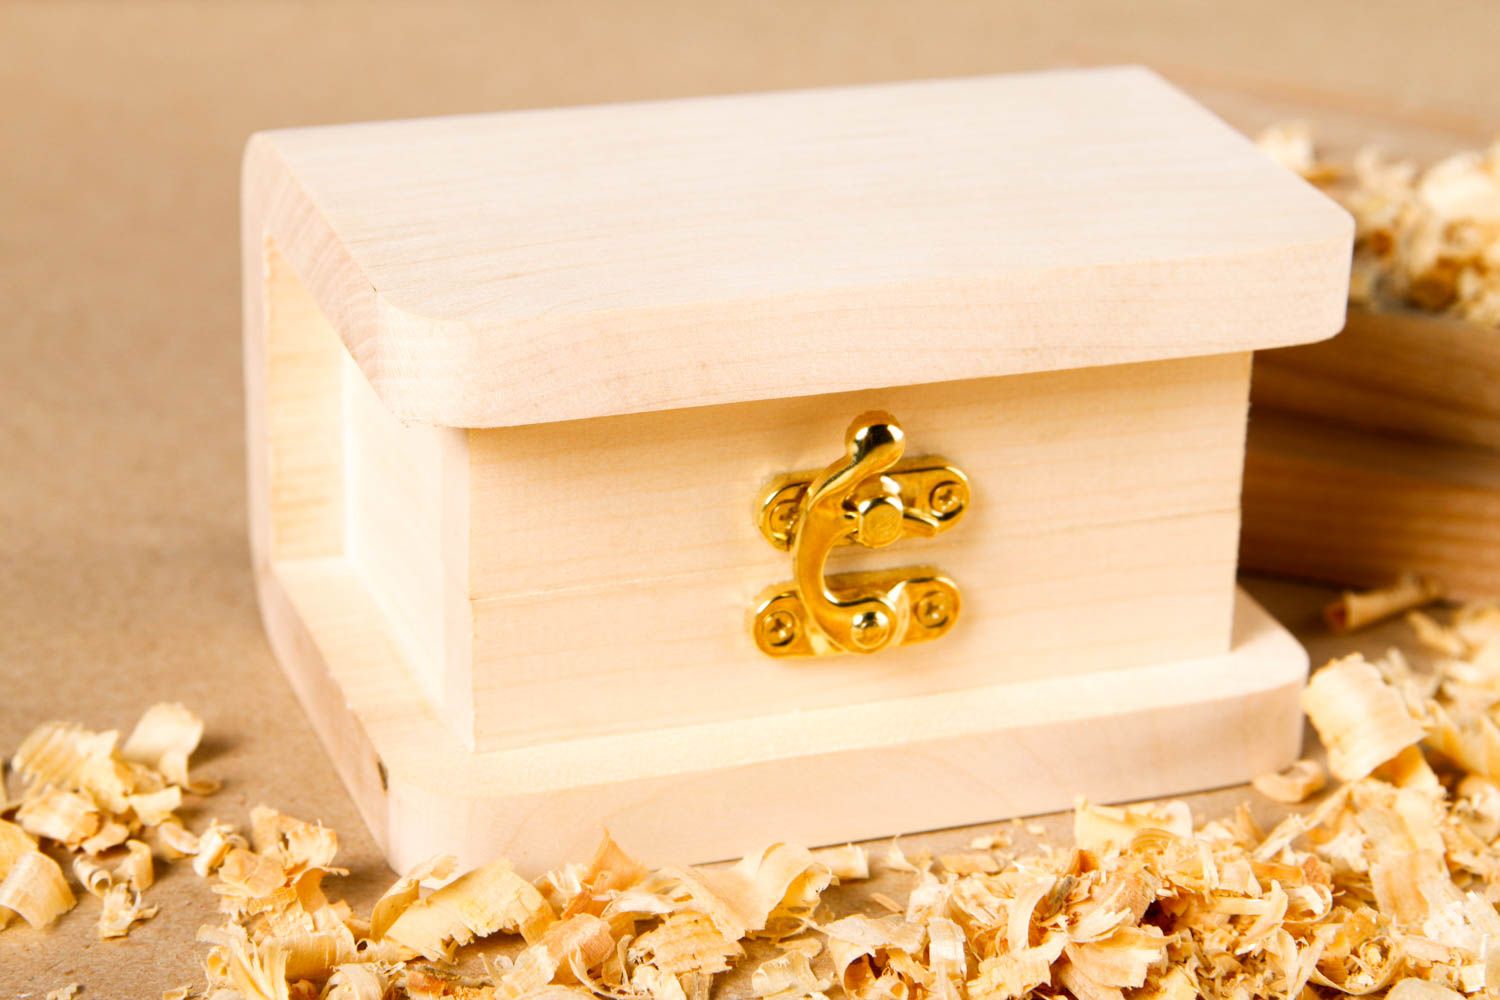 Cute handmade wooden blank box jewelry box design art materials art supplies photo 1